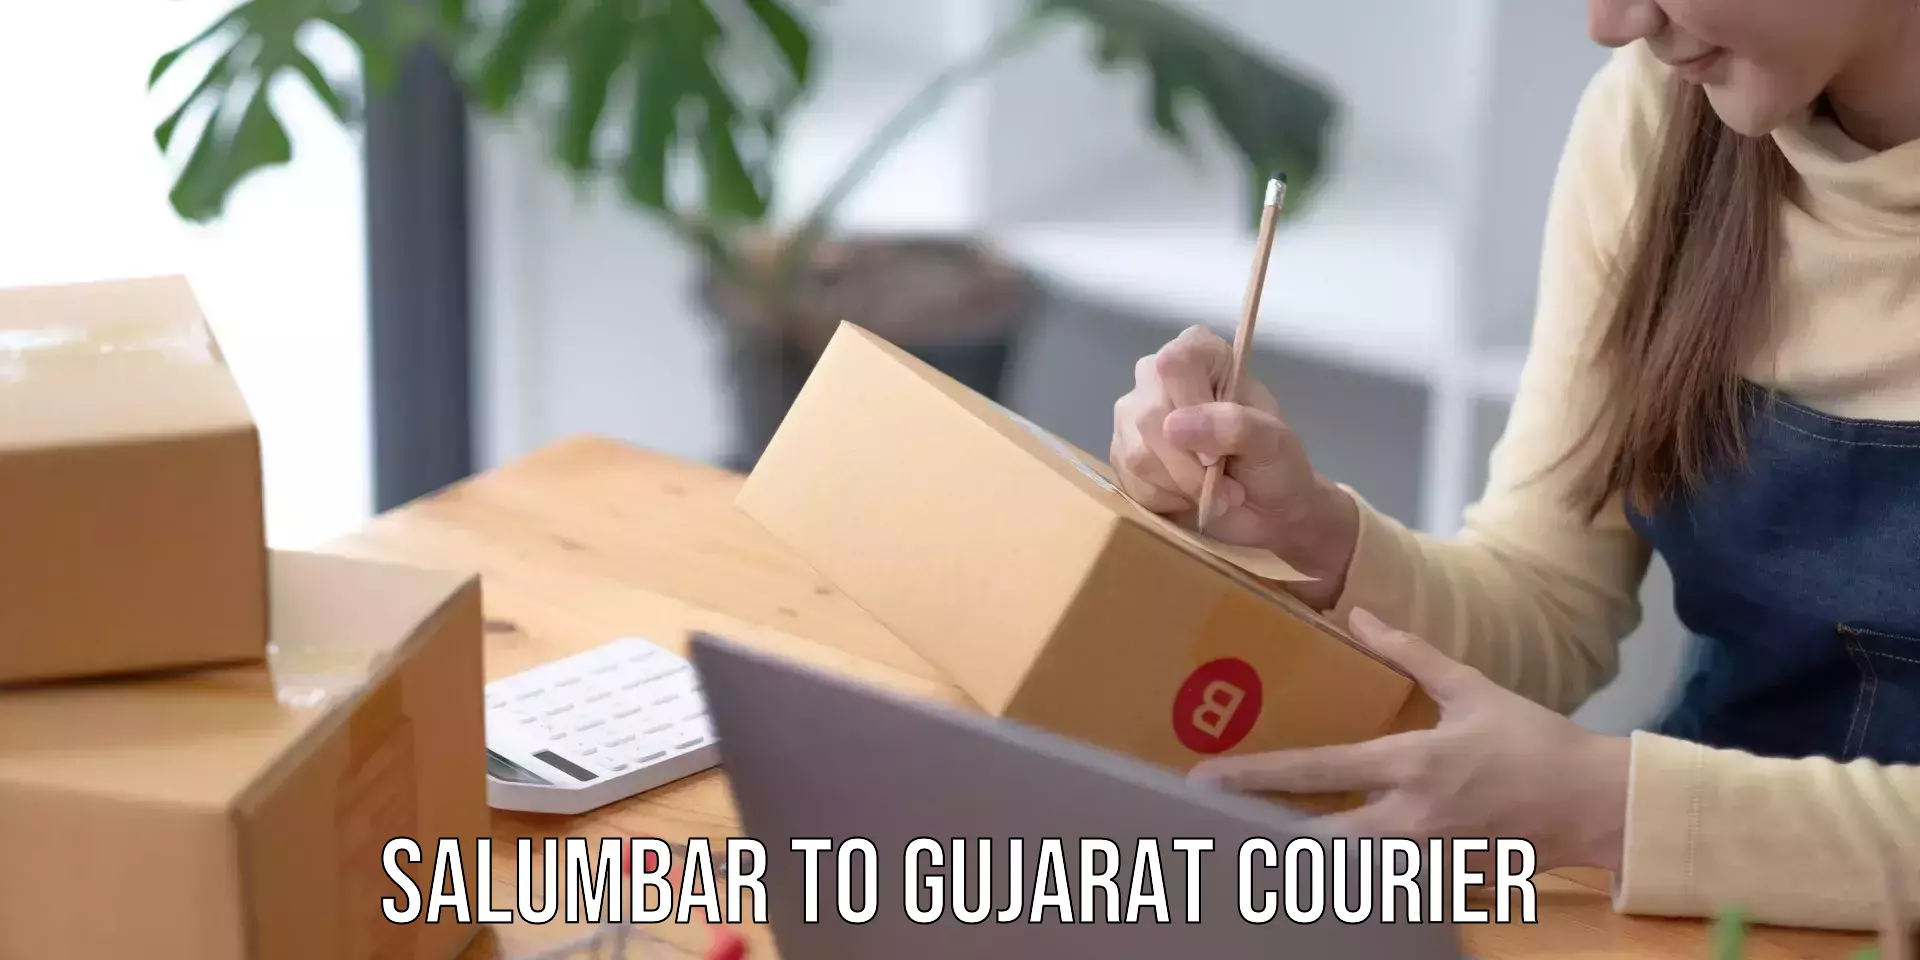 Reliable courier services Salumbar to Patan Gujarat